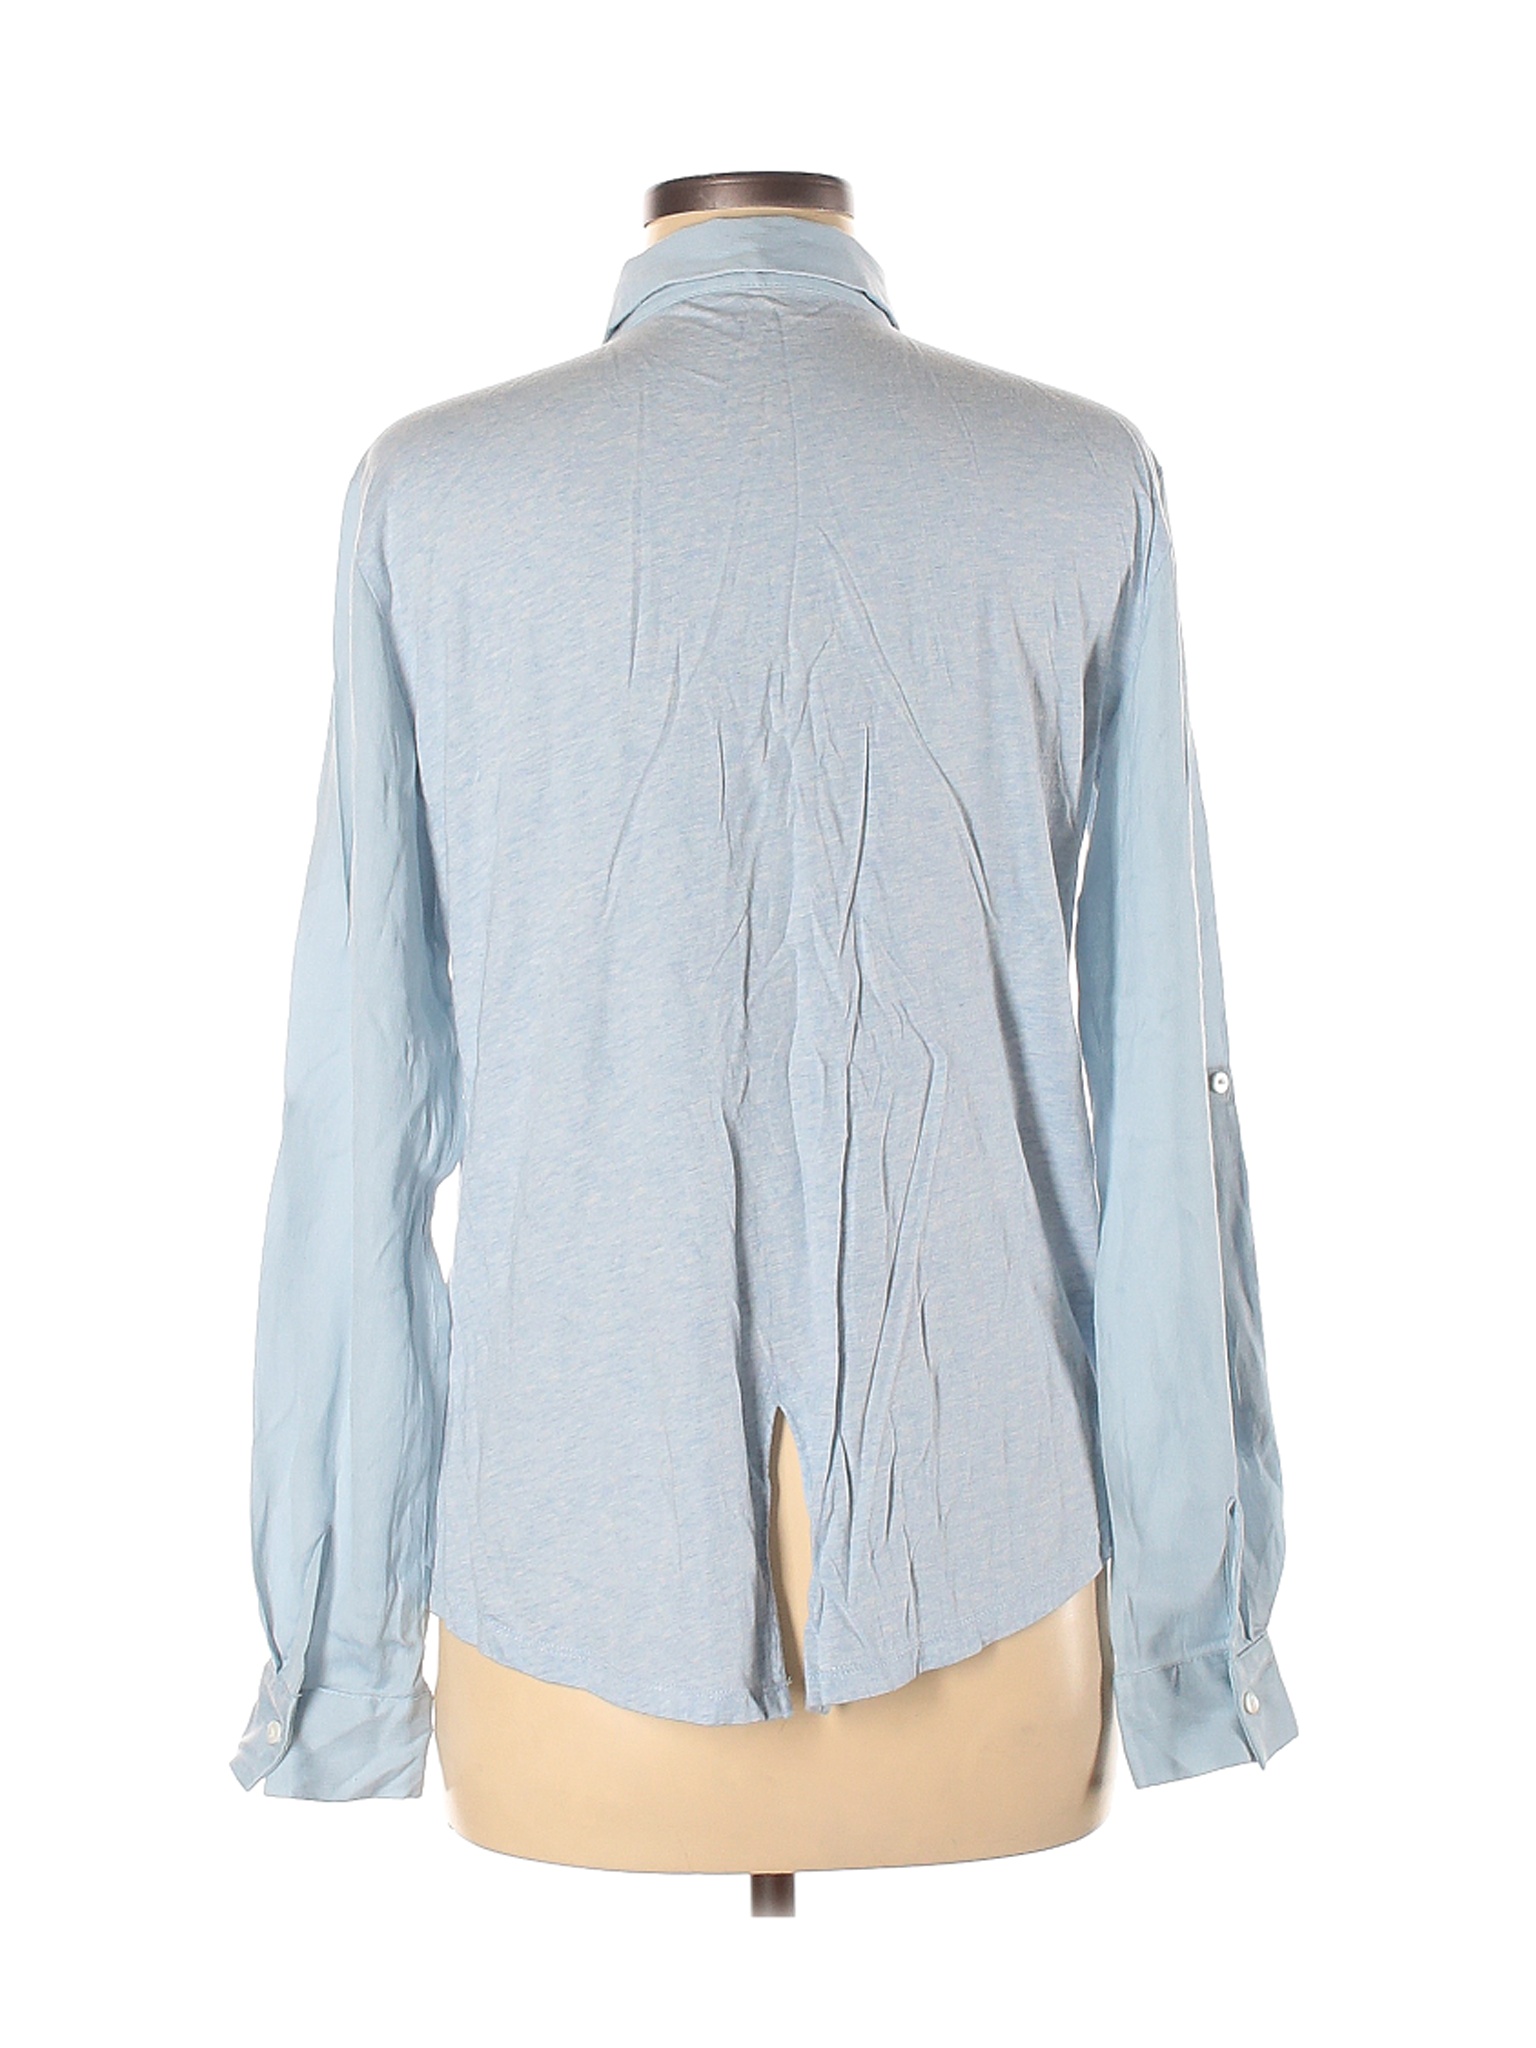 Ann Taylor LOFT Women Blue Long Sleeve Blouse M | eBay